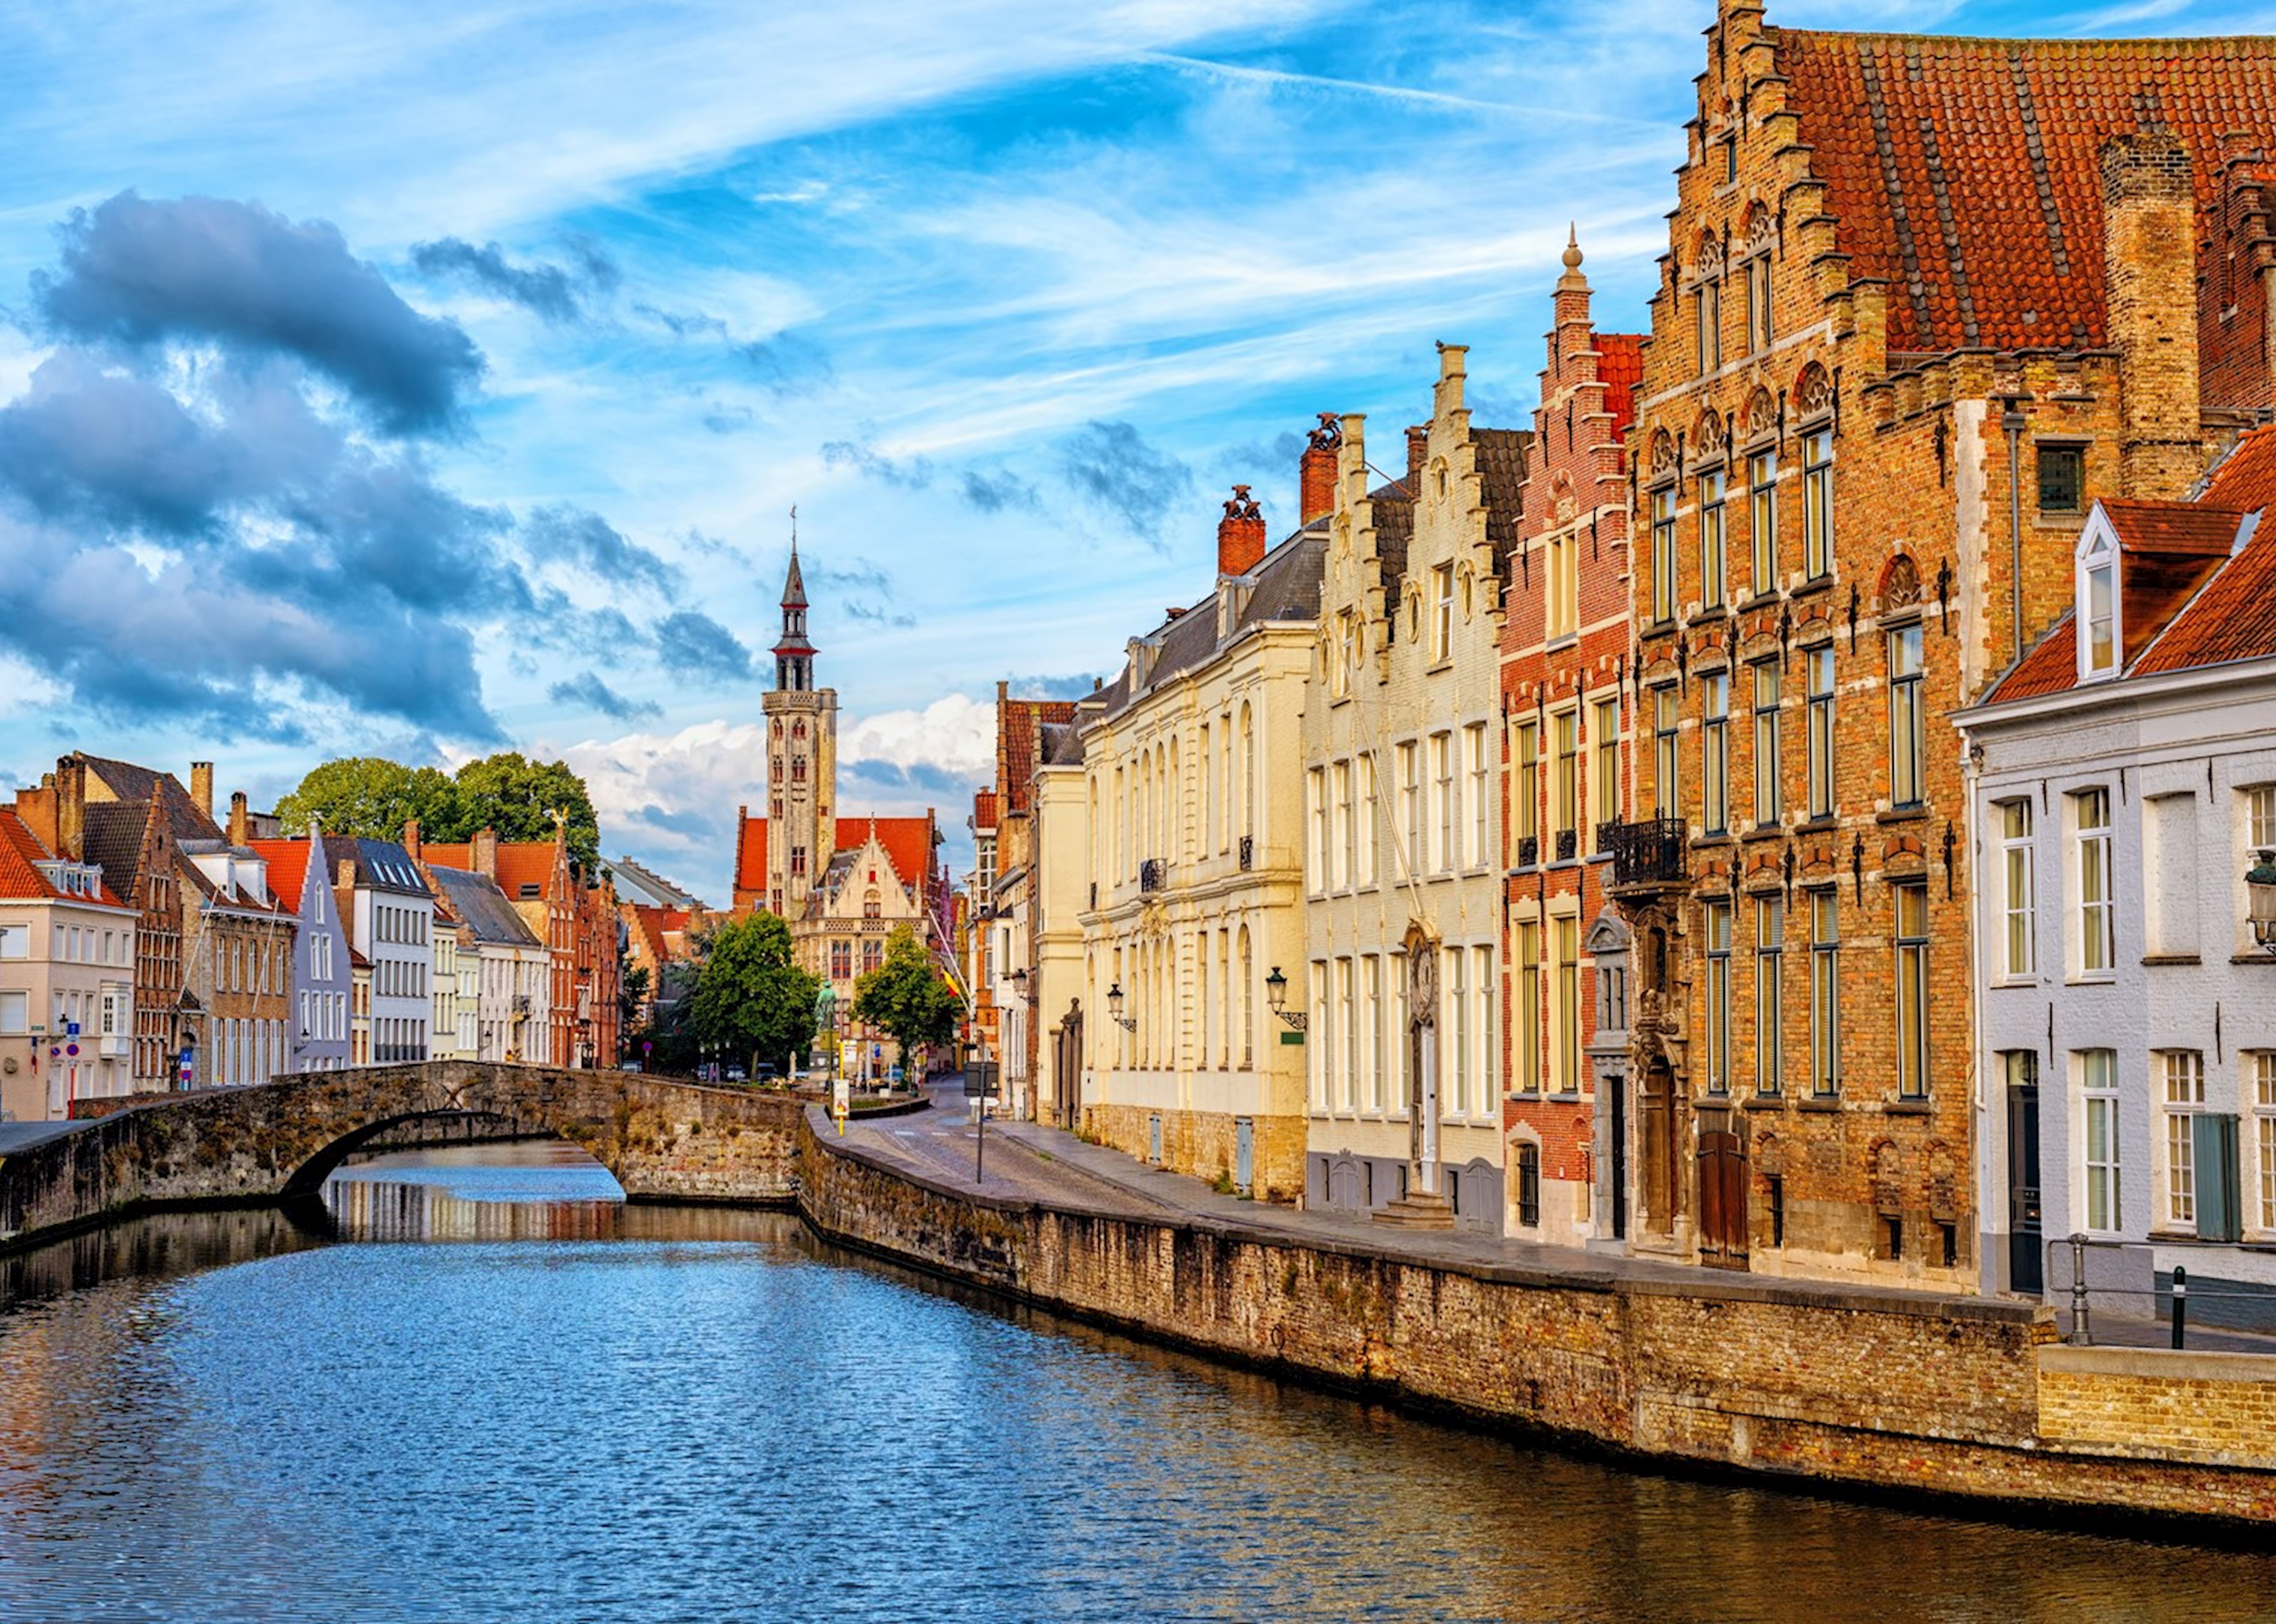 Les 5 villes les plus pittoresques à visiter en Europe pour découvrir leur charme architectural